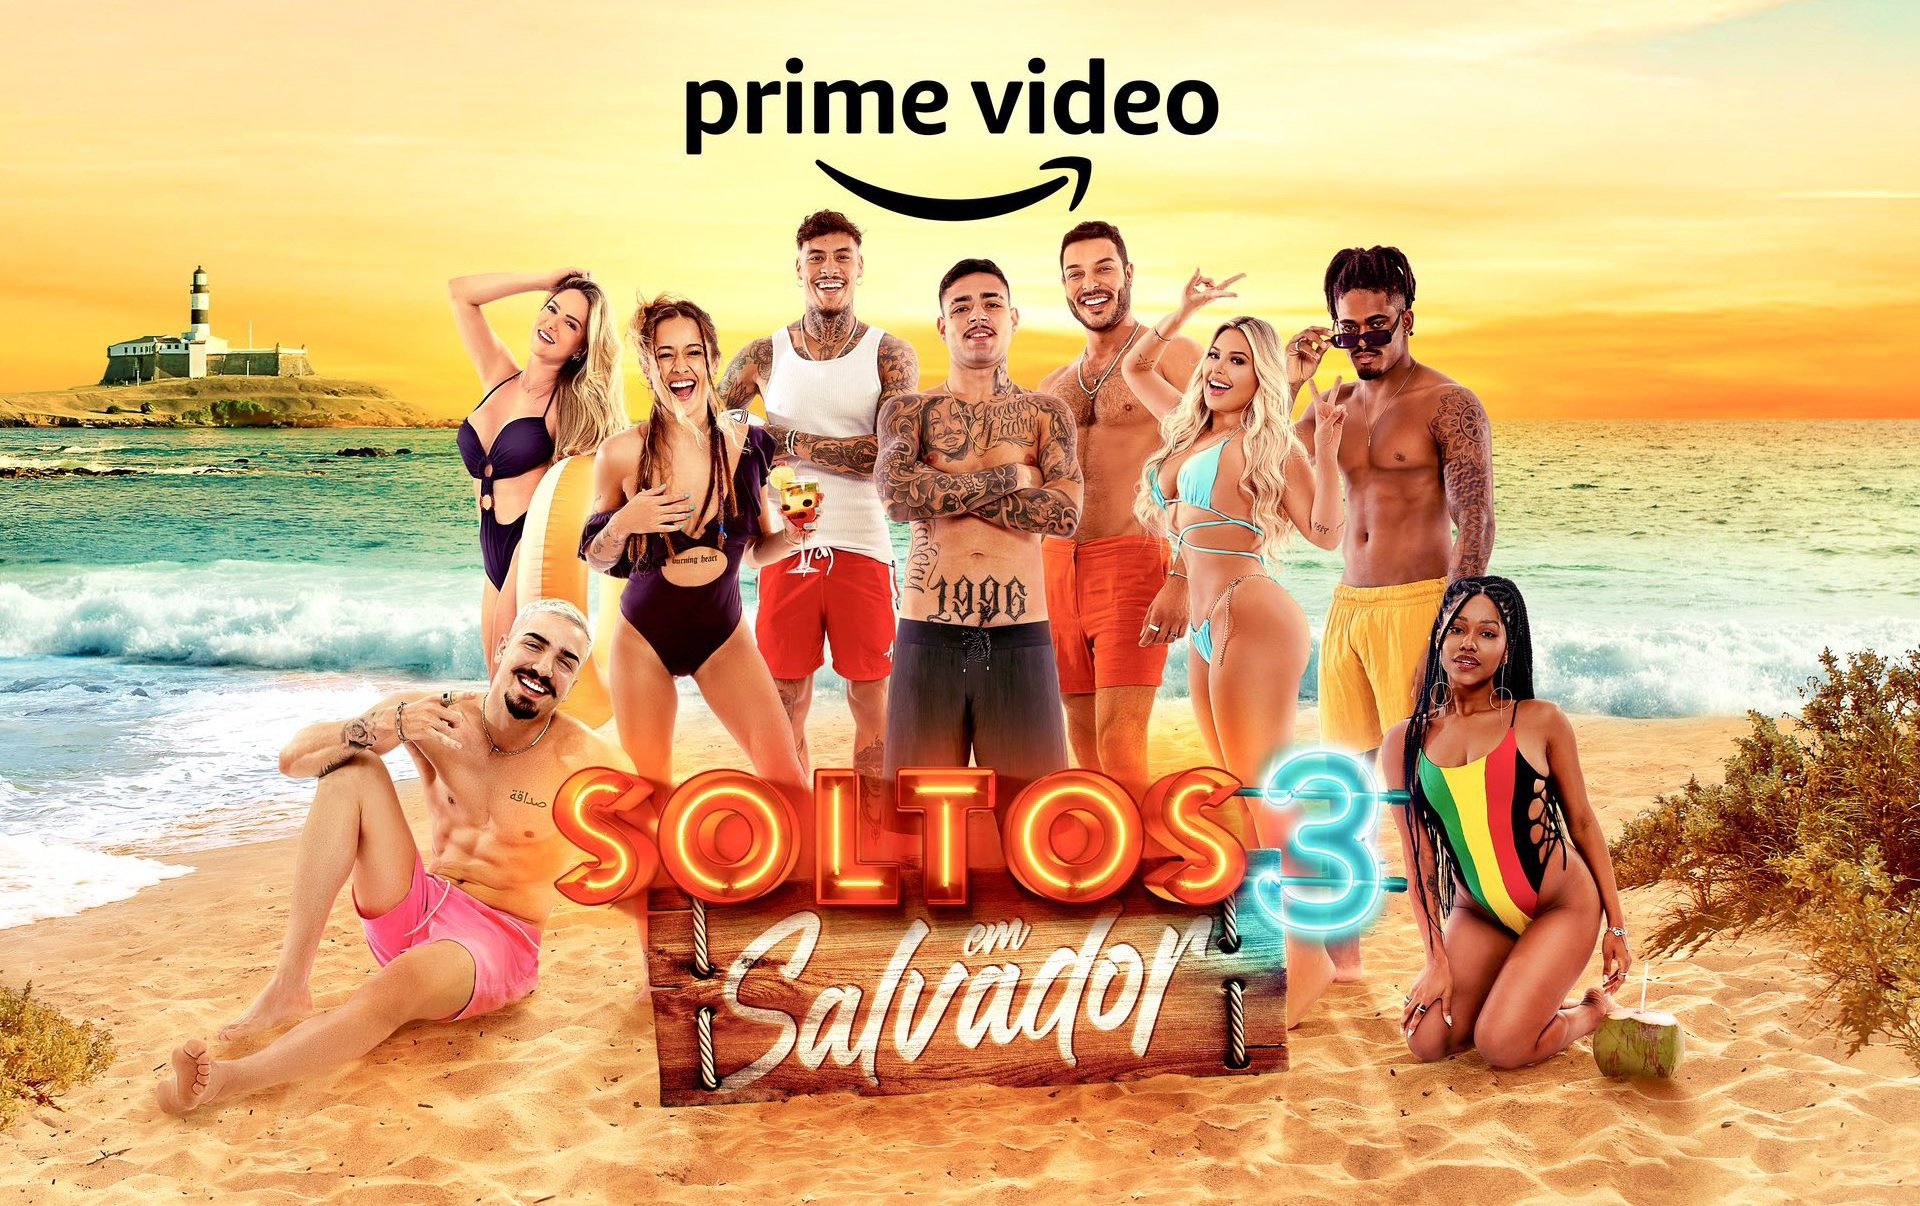 Soltos em Salvador promete voltar com as polêmicas da primeira temporada para alavancar a popularidade do reality show